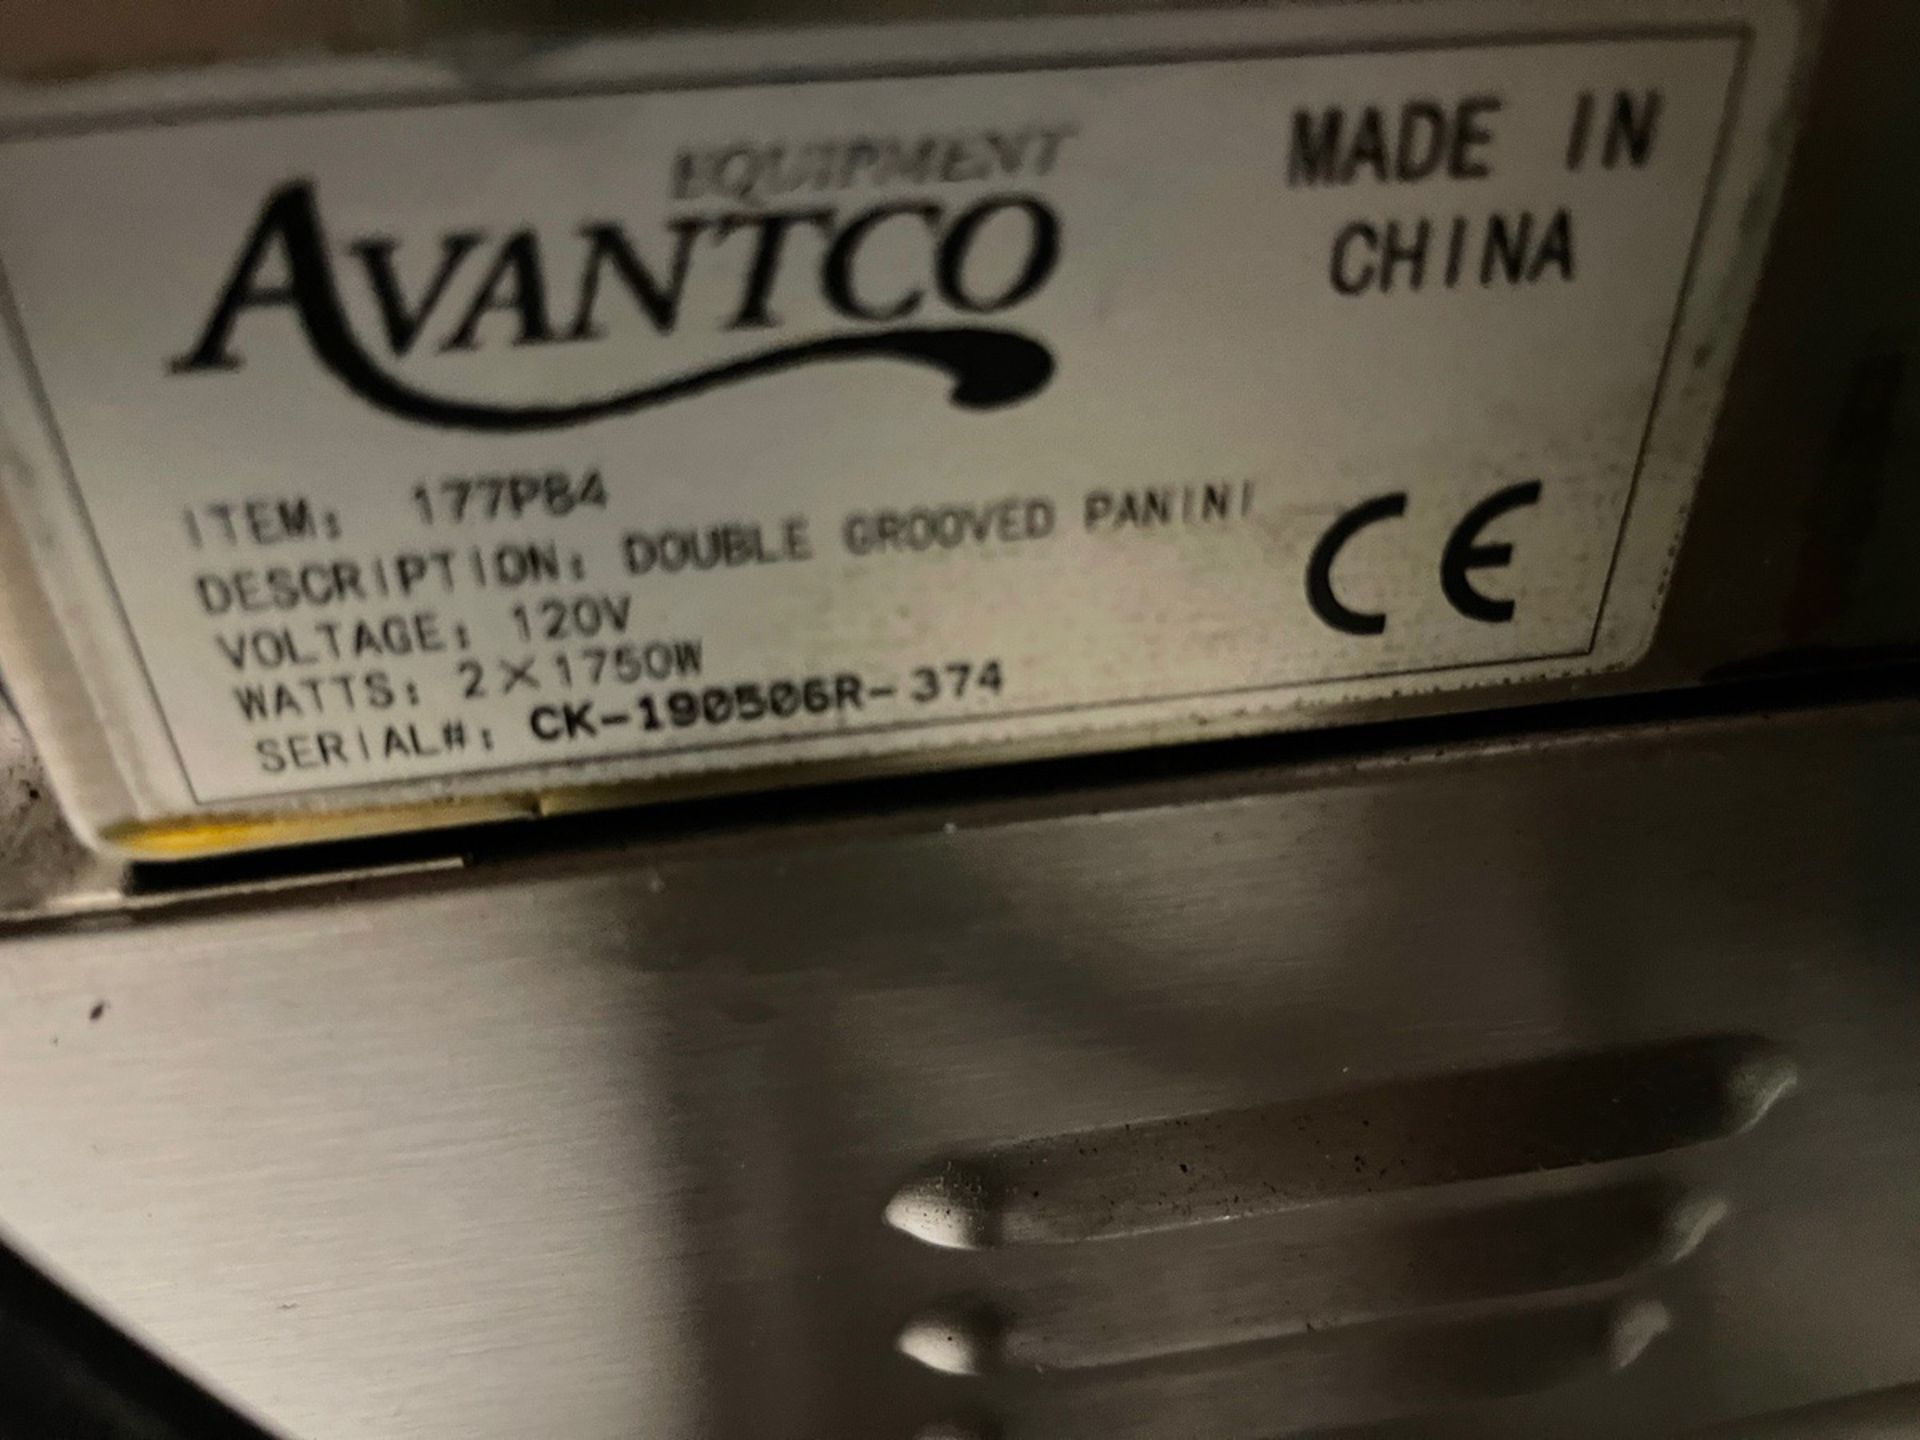 Avantco Dual Grooved Panini Press, S/N CK-190506R- 374 | Rig Fee $10 - Image 2 of 2